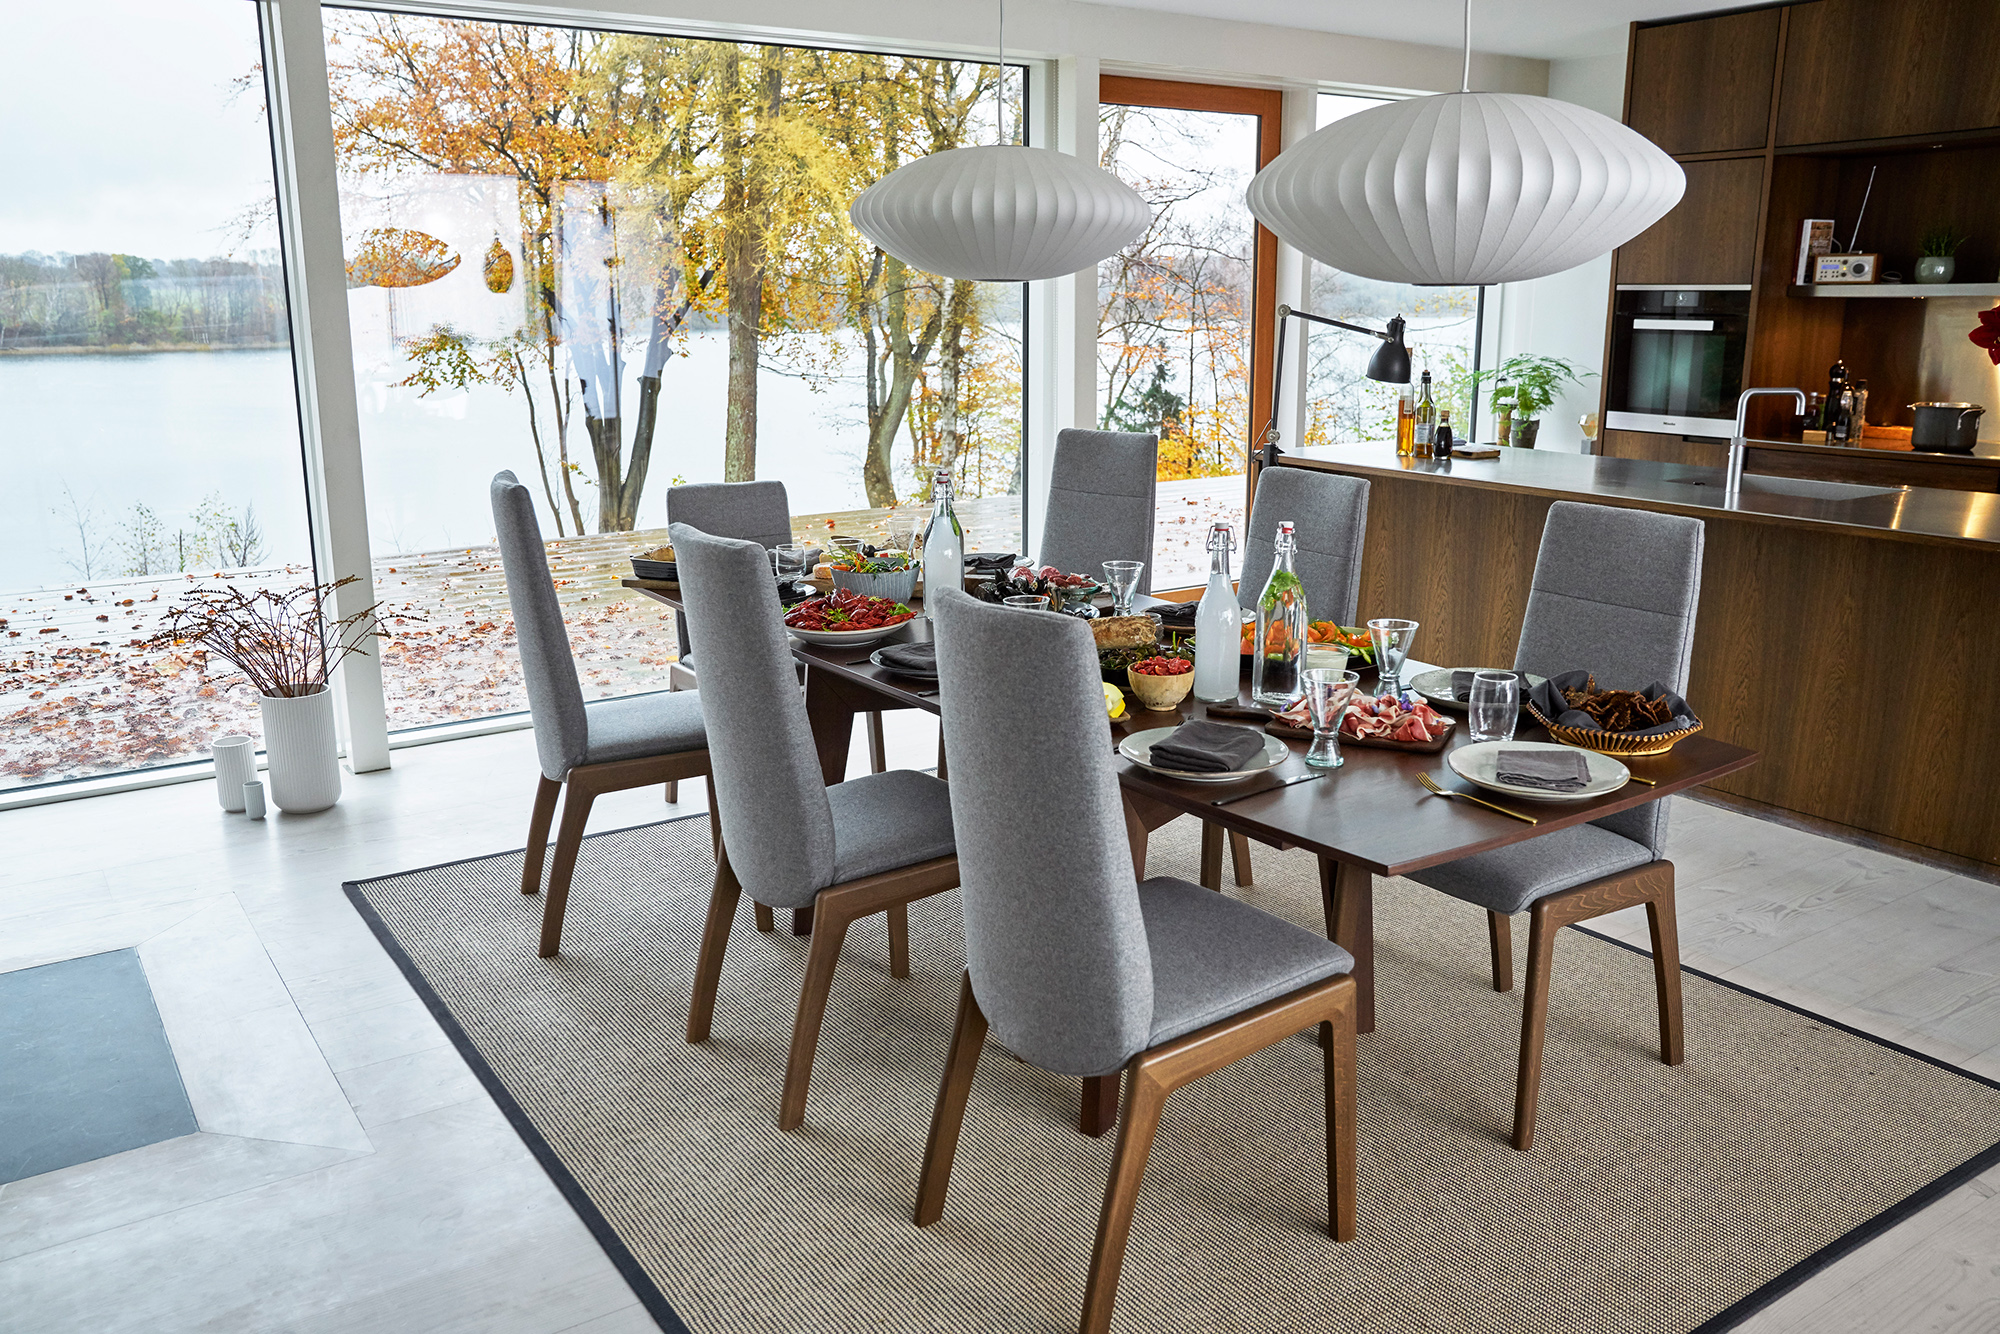 Typisch norwegische Spezialitäten schmecken besonders gut, wenn man diese entspannt auf bequemen Stressless Dining Stühlen genießen kann.